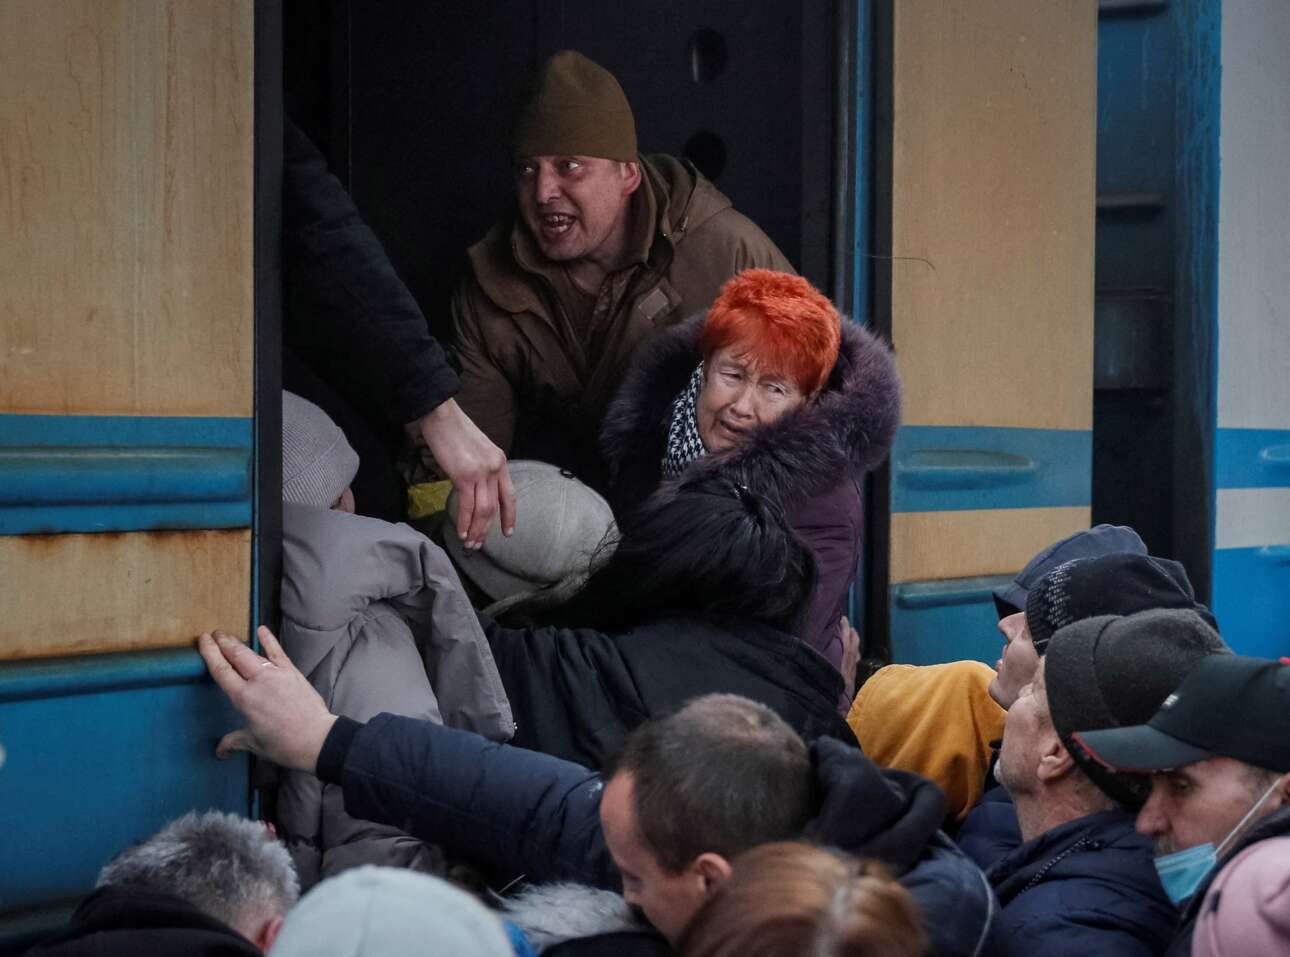 Σκηνή δραματικής επιβίβασης στο τρένο διαφυγής από το Κίεβο, το οποίο ταξίδεψε στην Πολωνία 